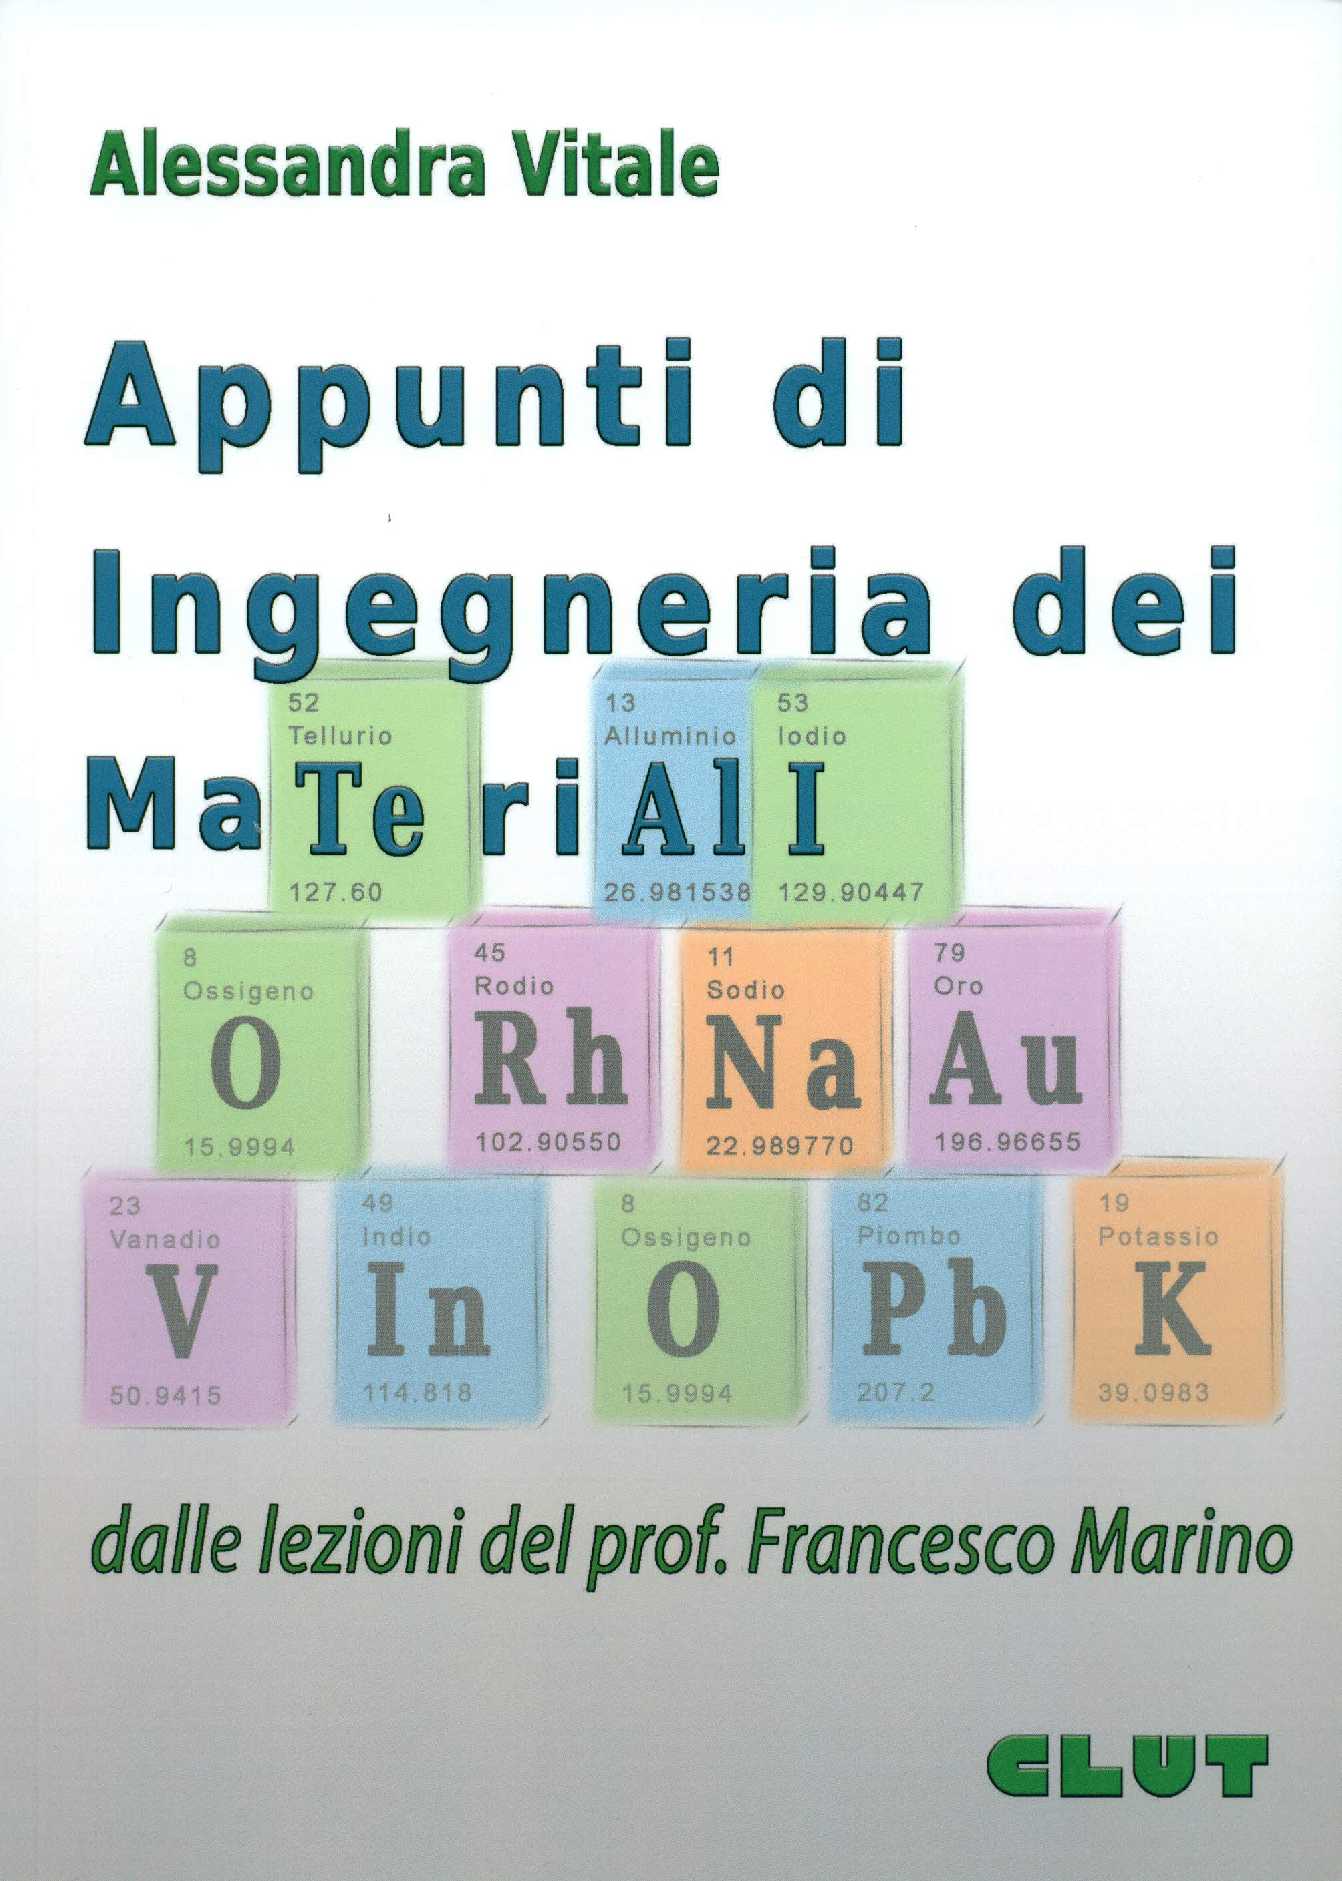 APPUNTI DI INGEGNERIA DEI MATERIALI - dalle lezioni del Prof. Francesco Marino